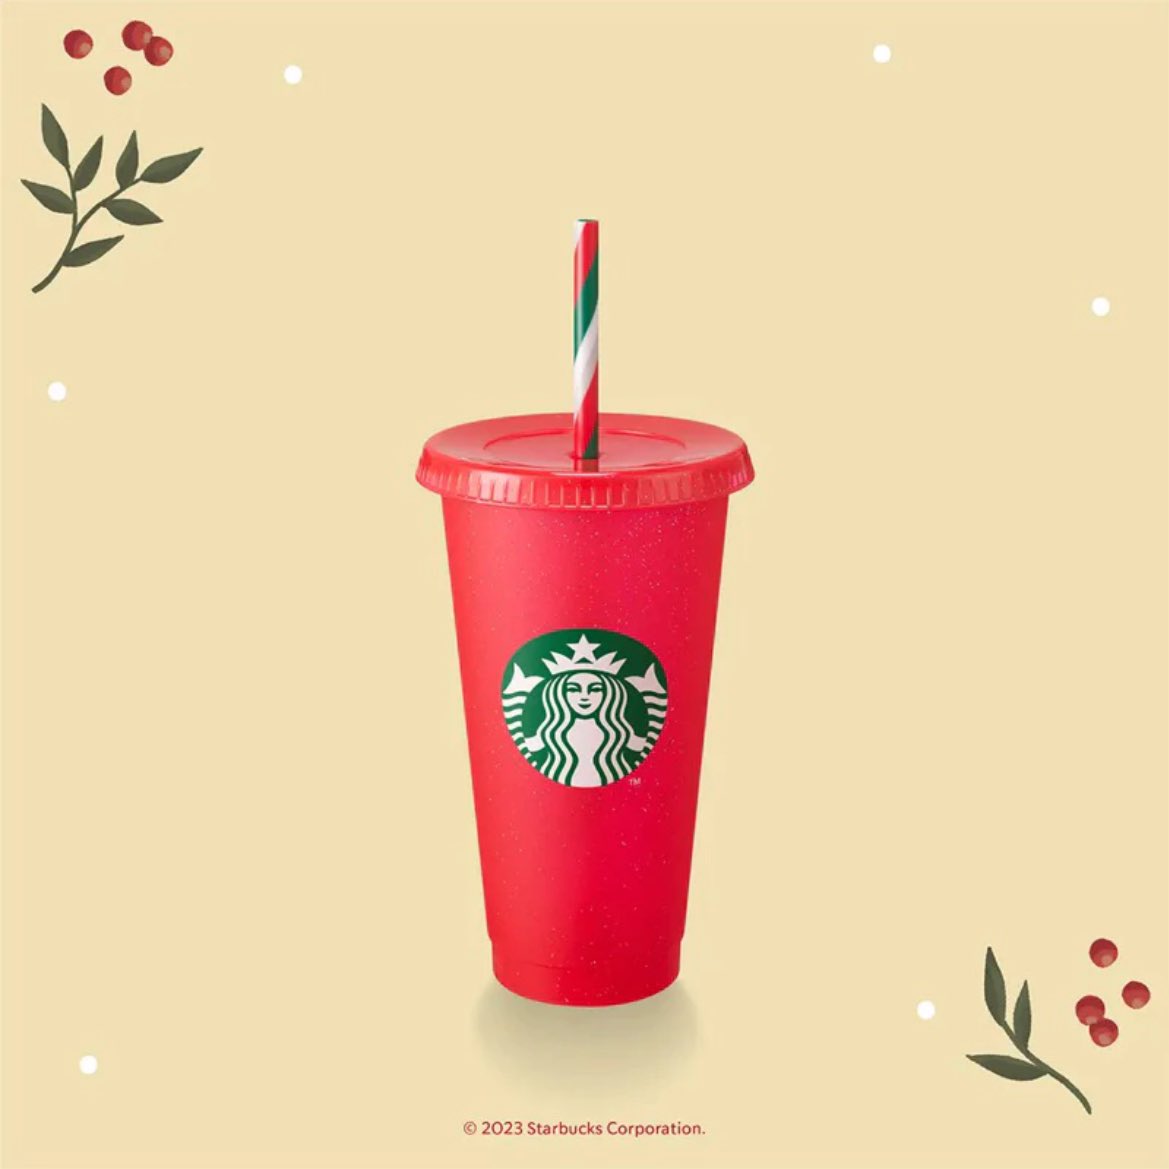 ส่งต่อแก้วสตาบัค คอล holiday2023 ไม่เคยใข้+แถมถุงผ้า (รุ่นนี้ม่ายมีแย้วว💝)
📌200 รวมส่ง
#แก้วสตาบัค #ส่งต่อแก้วstarbucks #Starbucks #รับหิ้วแก้วสตาบัค #ตามหาแก้วstarbucks #พี่ฮง #adultingshowmax #DiorAW24 #pitbabeเซลก้าเดย์ #PokemonDay #PokemonDay2024 #PokemonPresents #ส่งต่อ